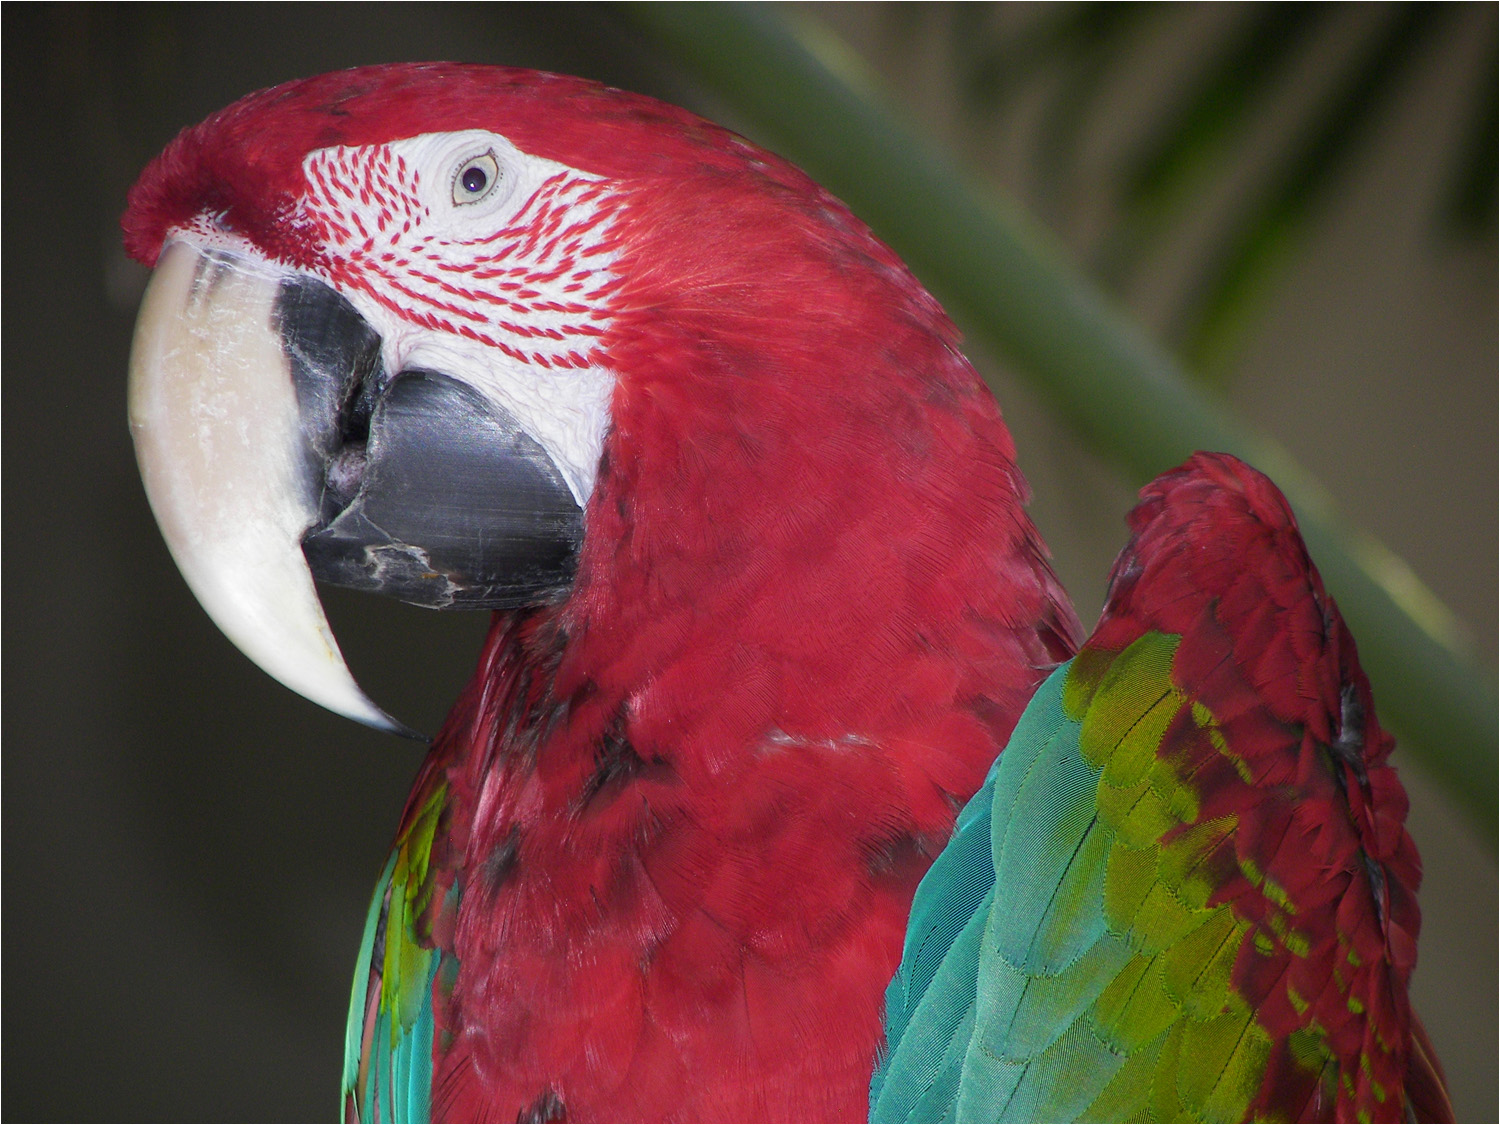 One of the Hyatt parrots